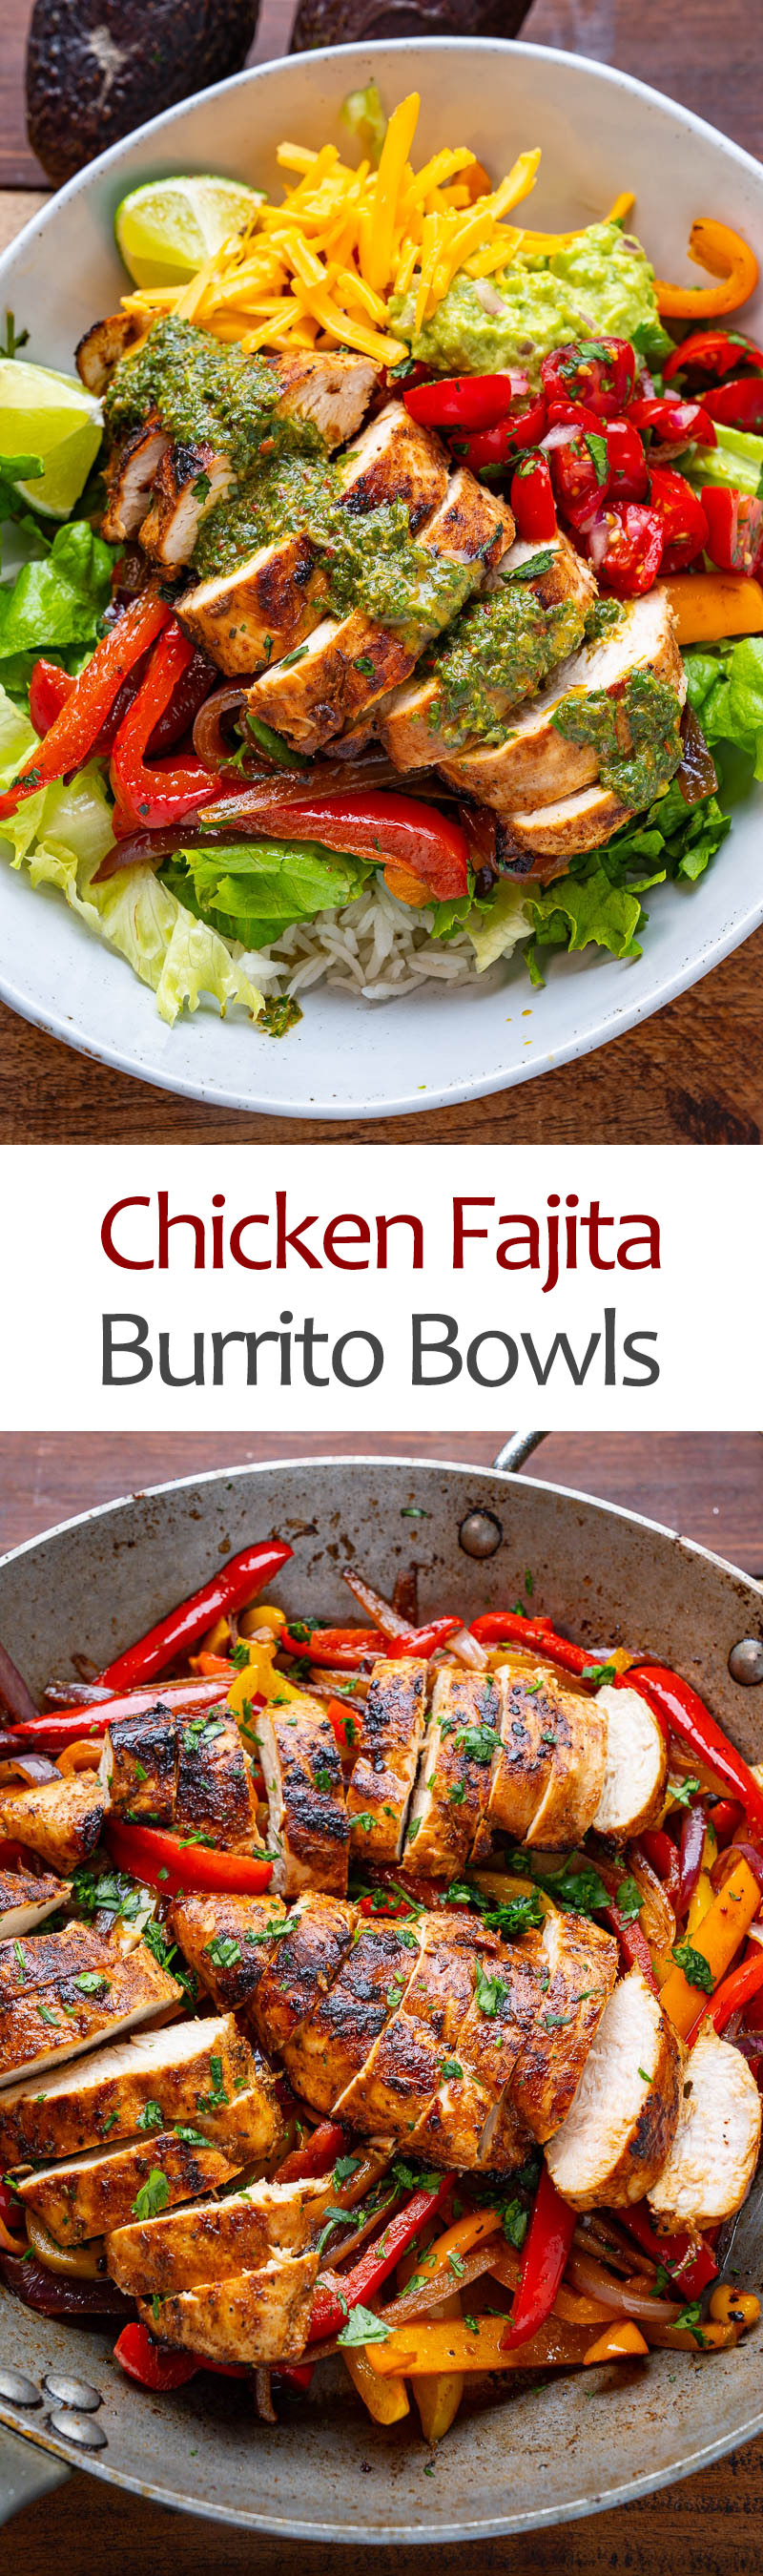 Chicken Fajita Burrito Bowls